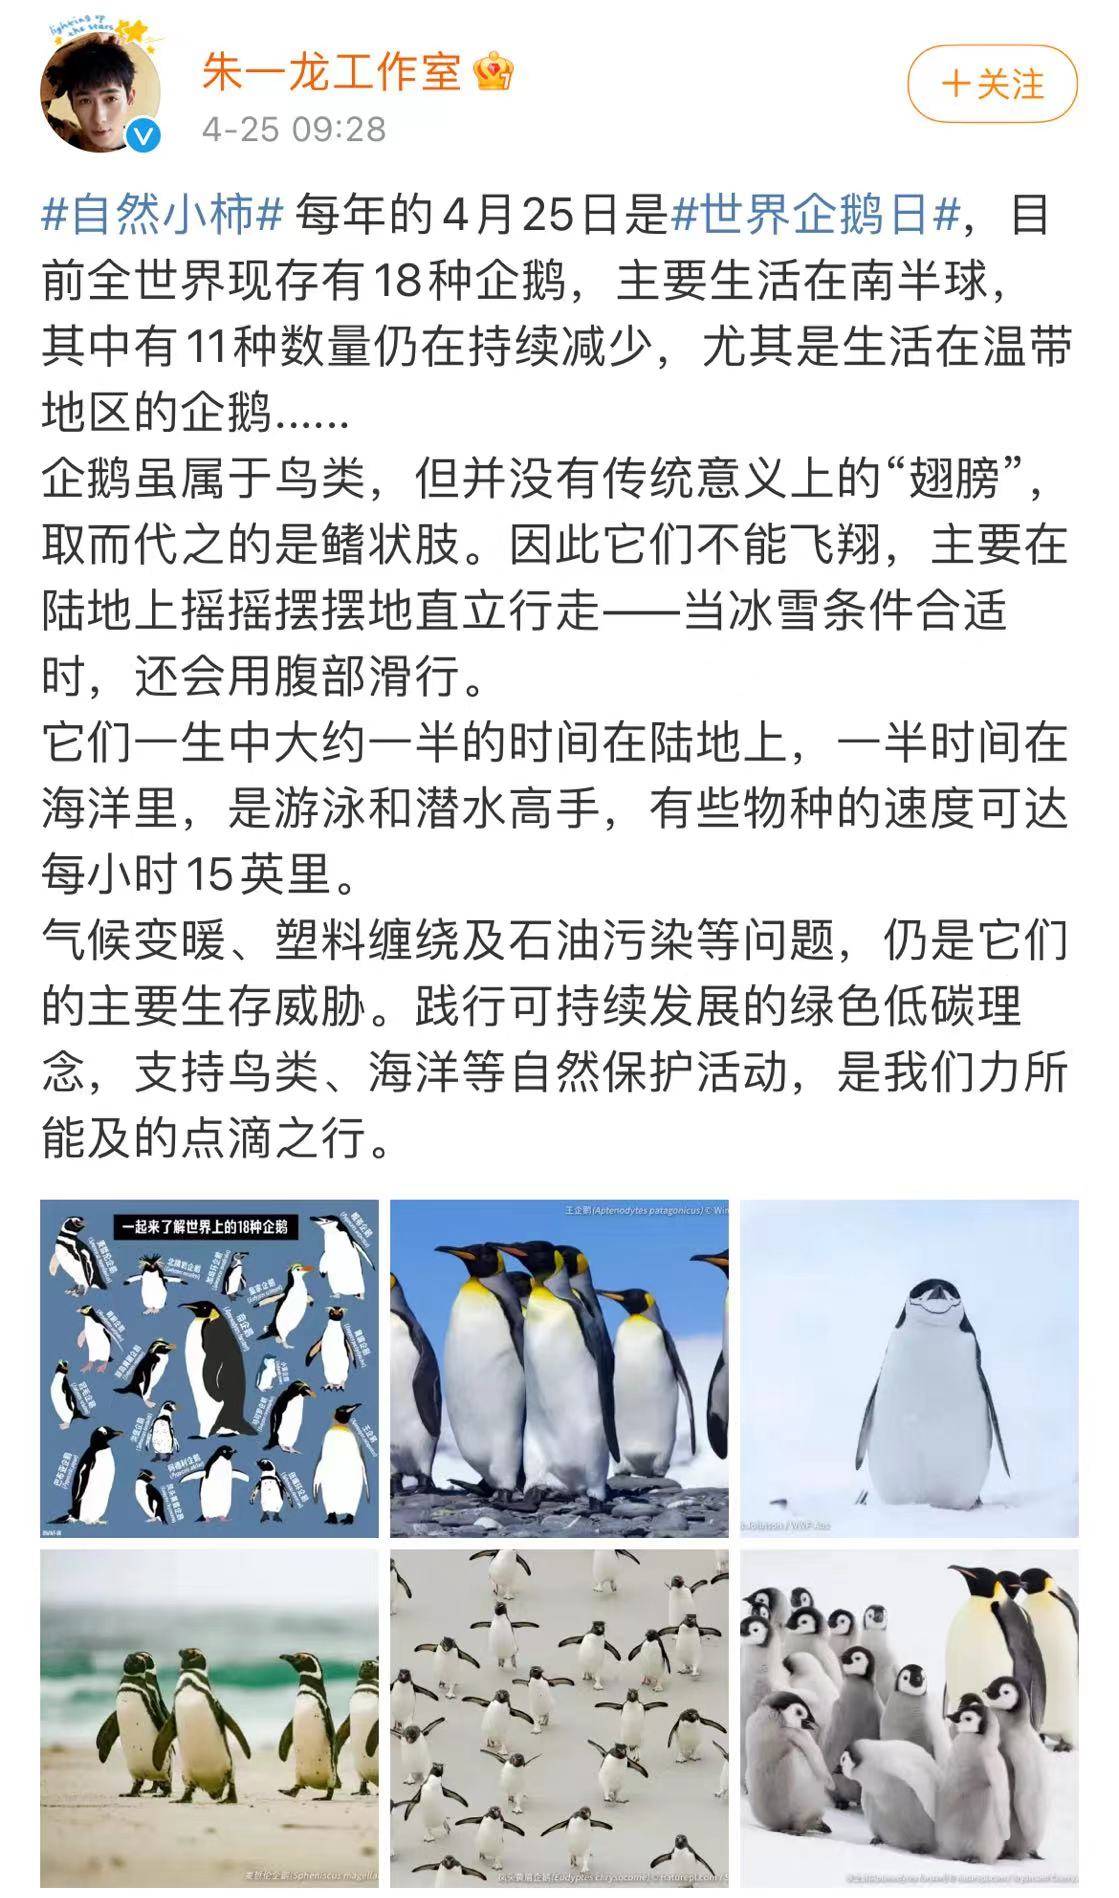 朱一龙发文号召关注世界企鹅日 保护环境关爱企鹅生存